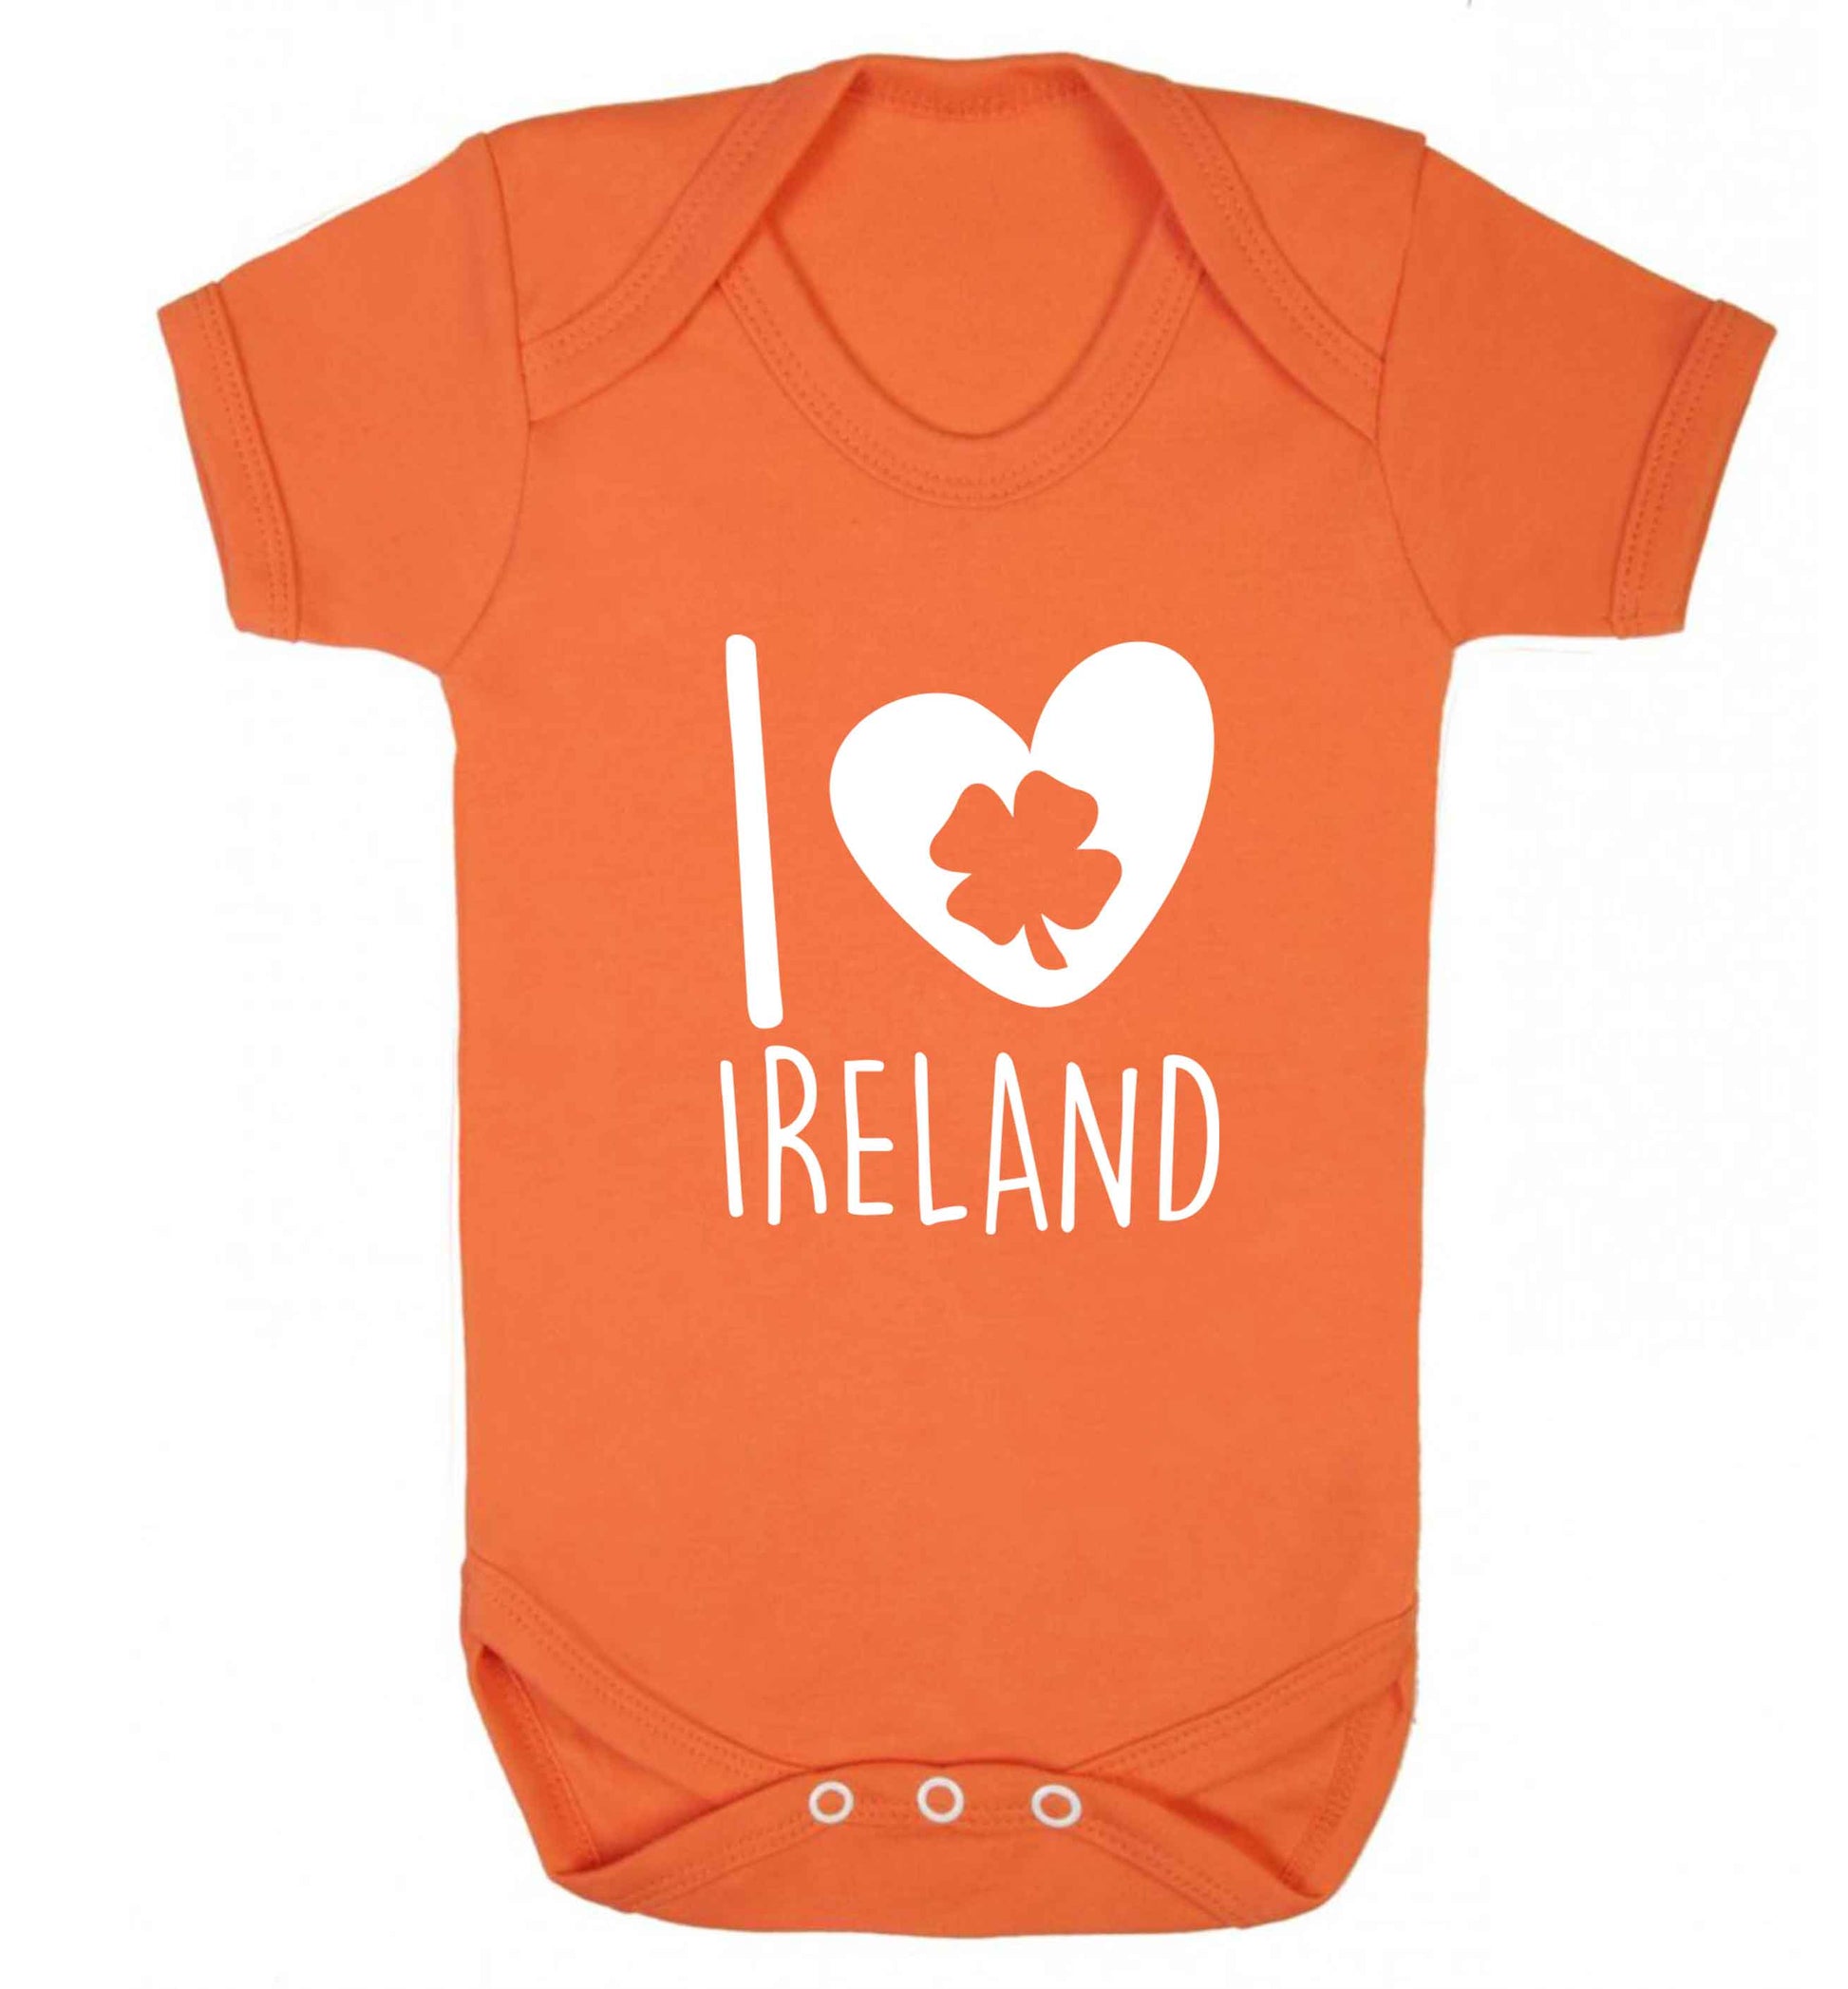 I love Ireland baby vest orange 18-24 months